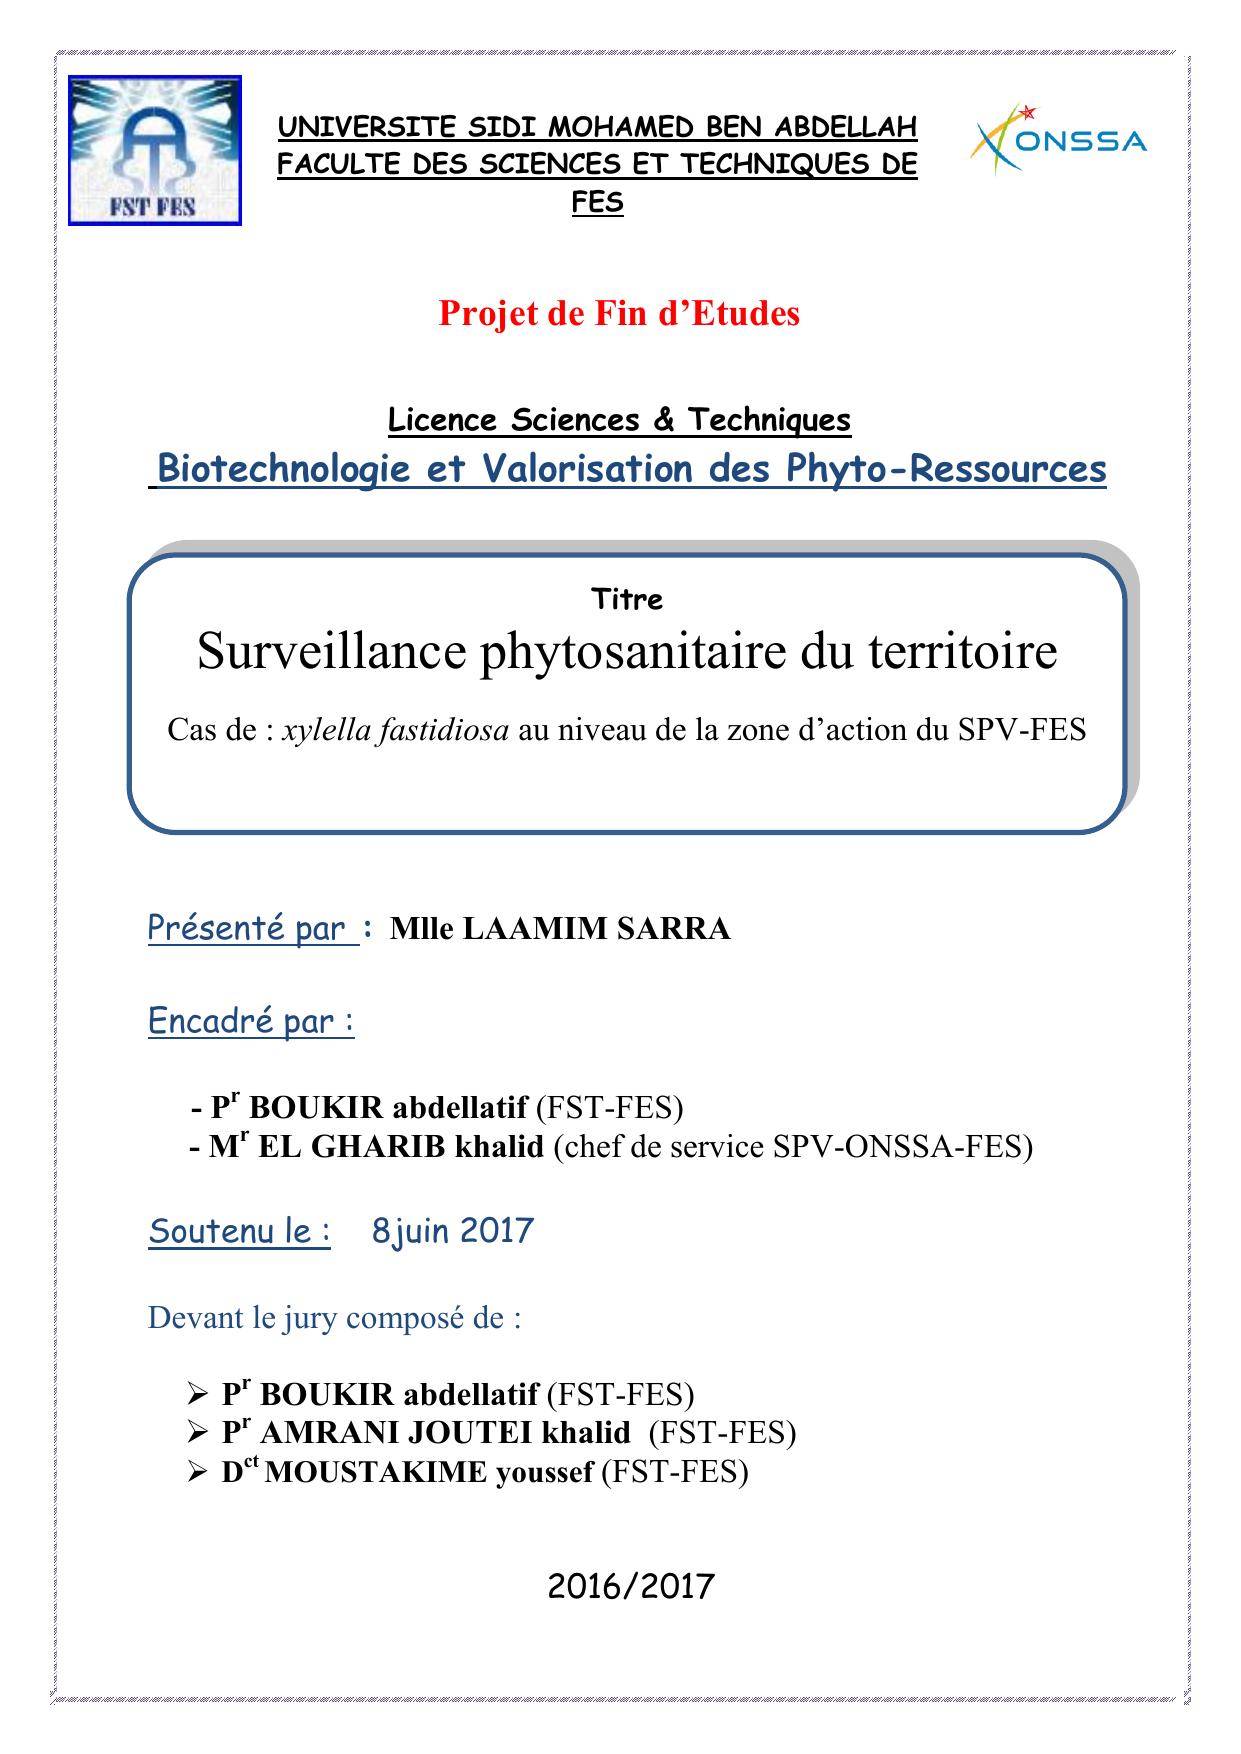 Surveillance phytosanitaire du territoire Cas de : xylella fastidiosa au niveau de la zone d’action du SPV-FES